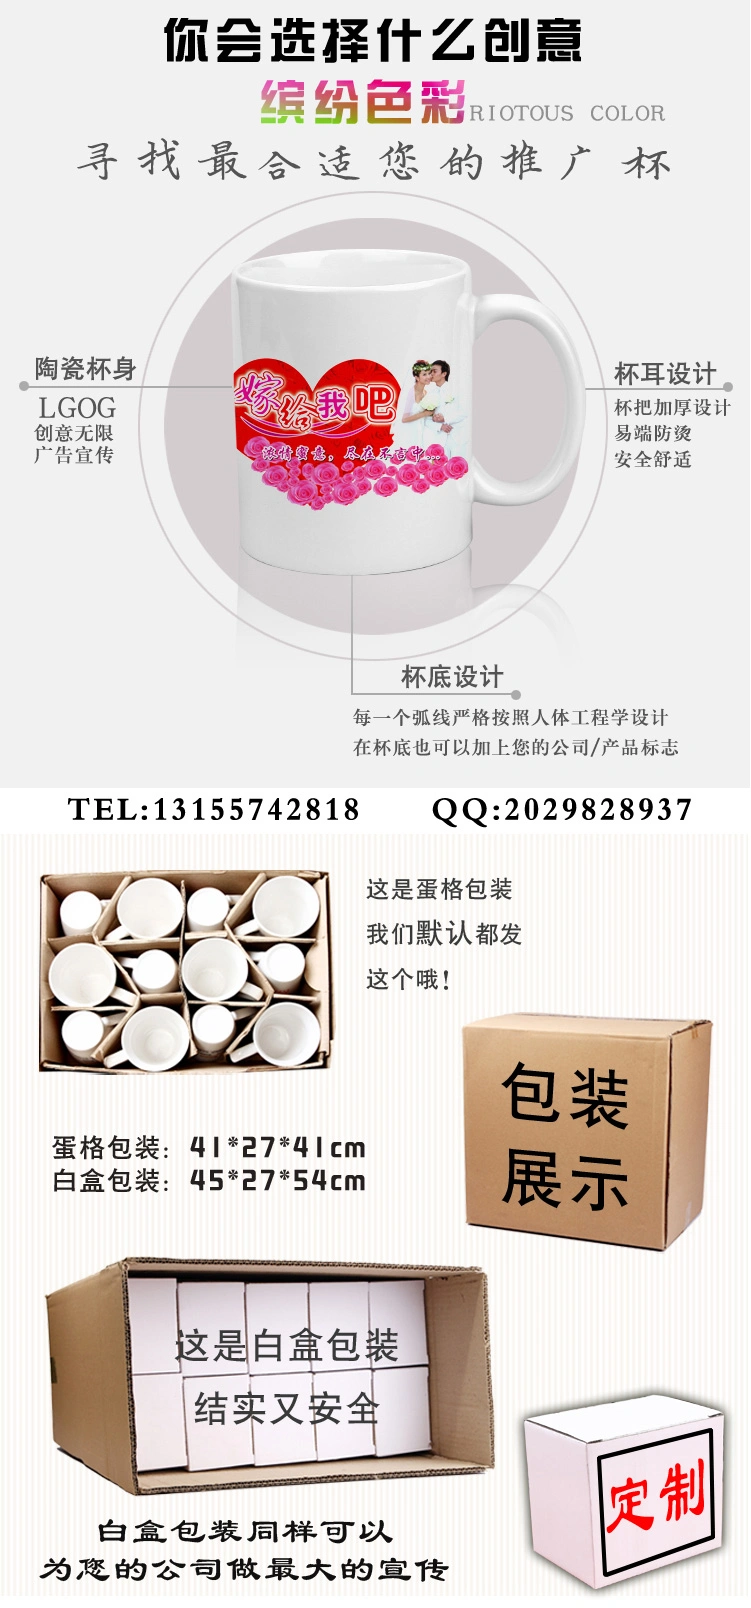 White Coating Mugs Heat Press Sublimation Mugs 11 Oz Coffee Mug 330 Ml